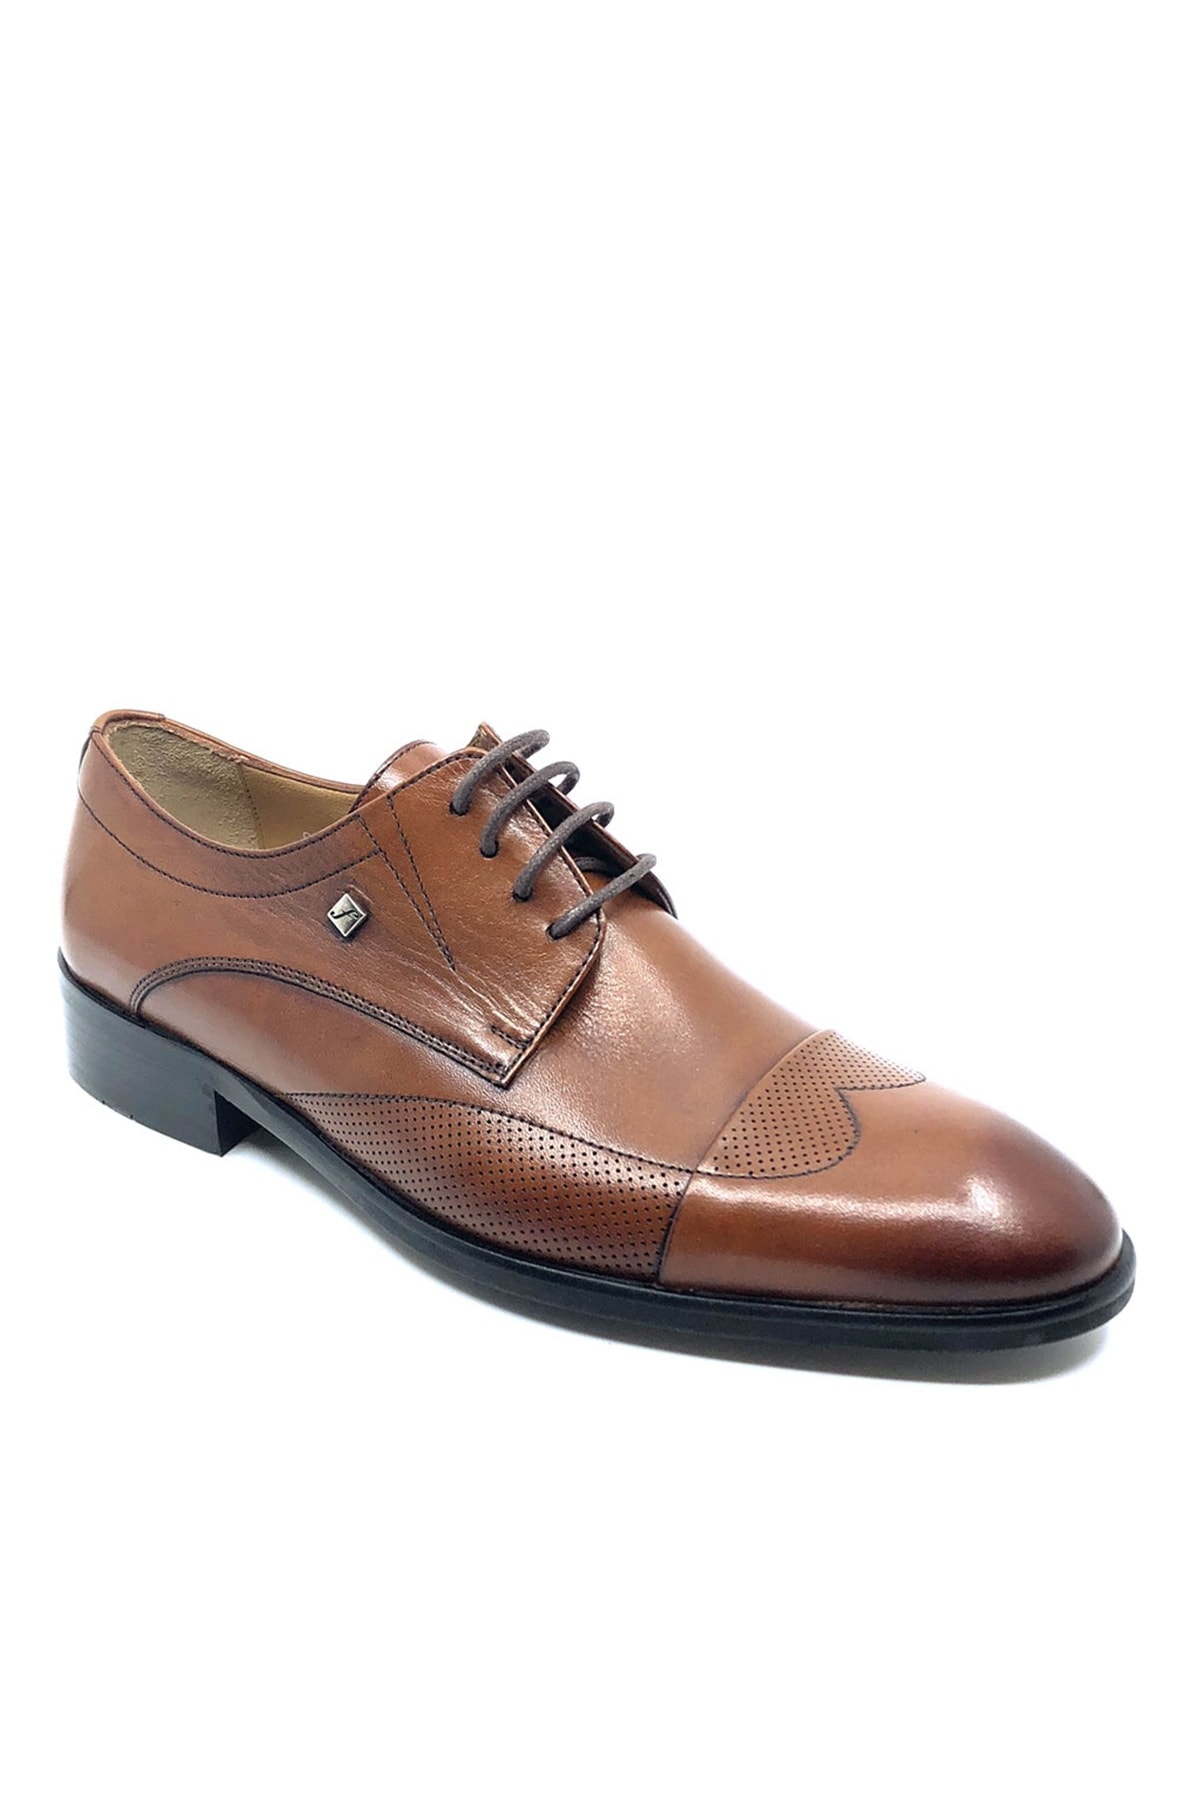 Fosco Klasik Erkek Ayakkabı Modelleri